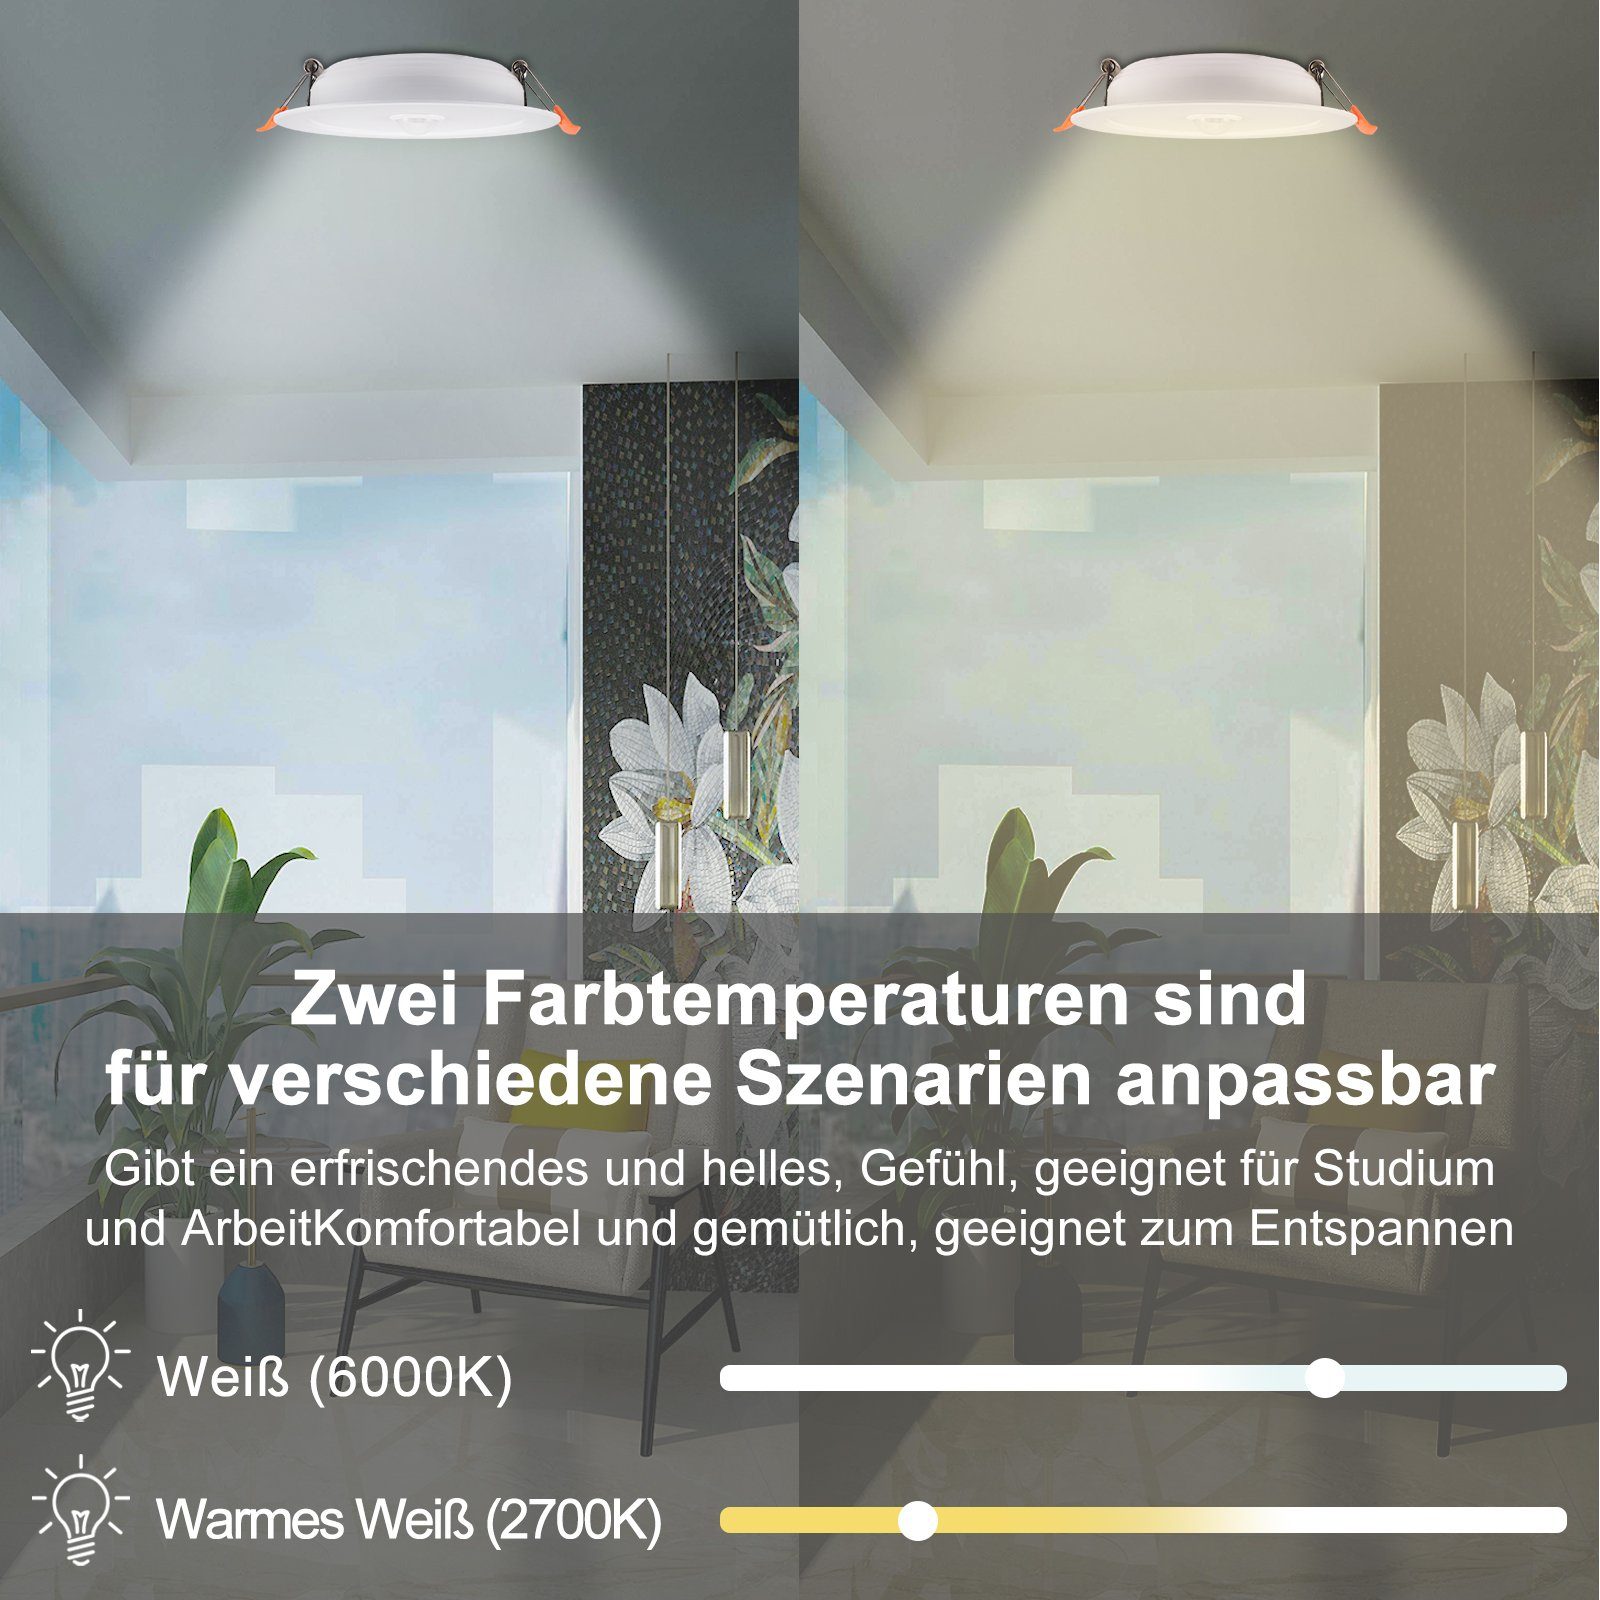 Rosnek LED Einbaustrahler Flure Warmweiß Lagerhallen Wohnräume Deko, 12W, für Balkone Reinweiß, Sensor-Induktion